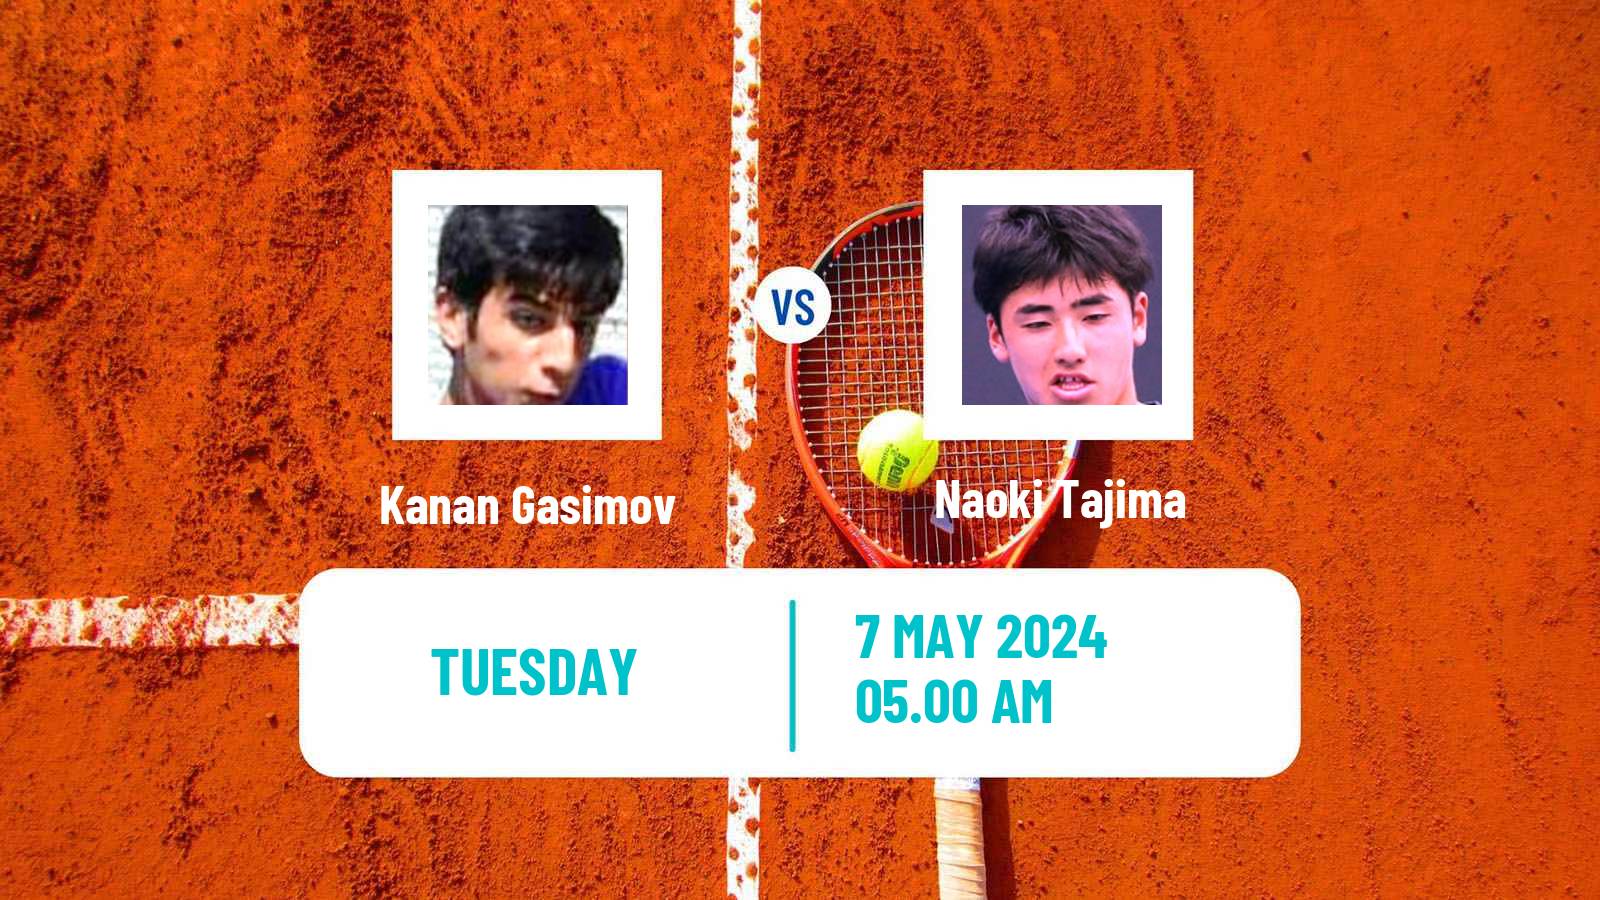 Tennis ITF M15 Antalya 14 Men Kanan Gasimov - Naoki Tajima